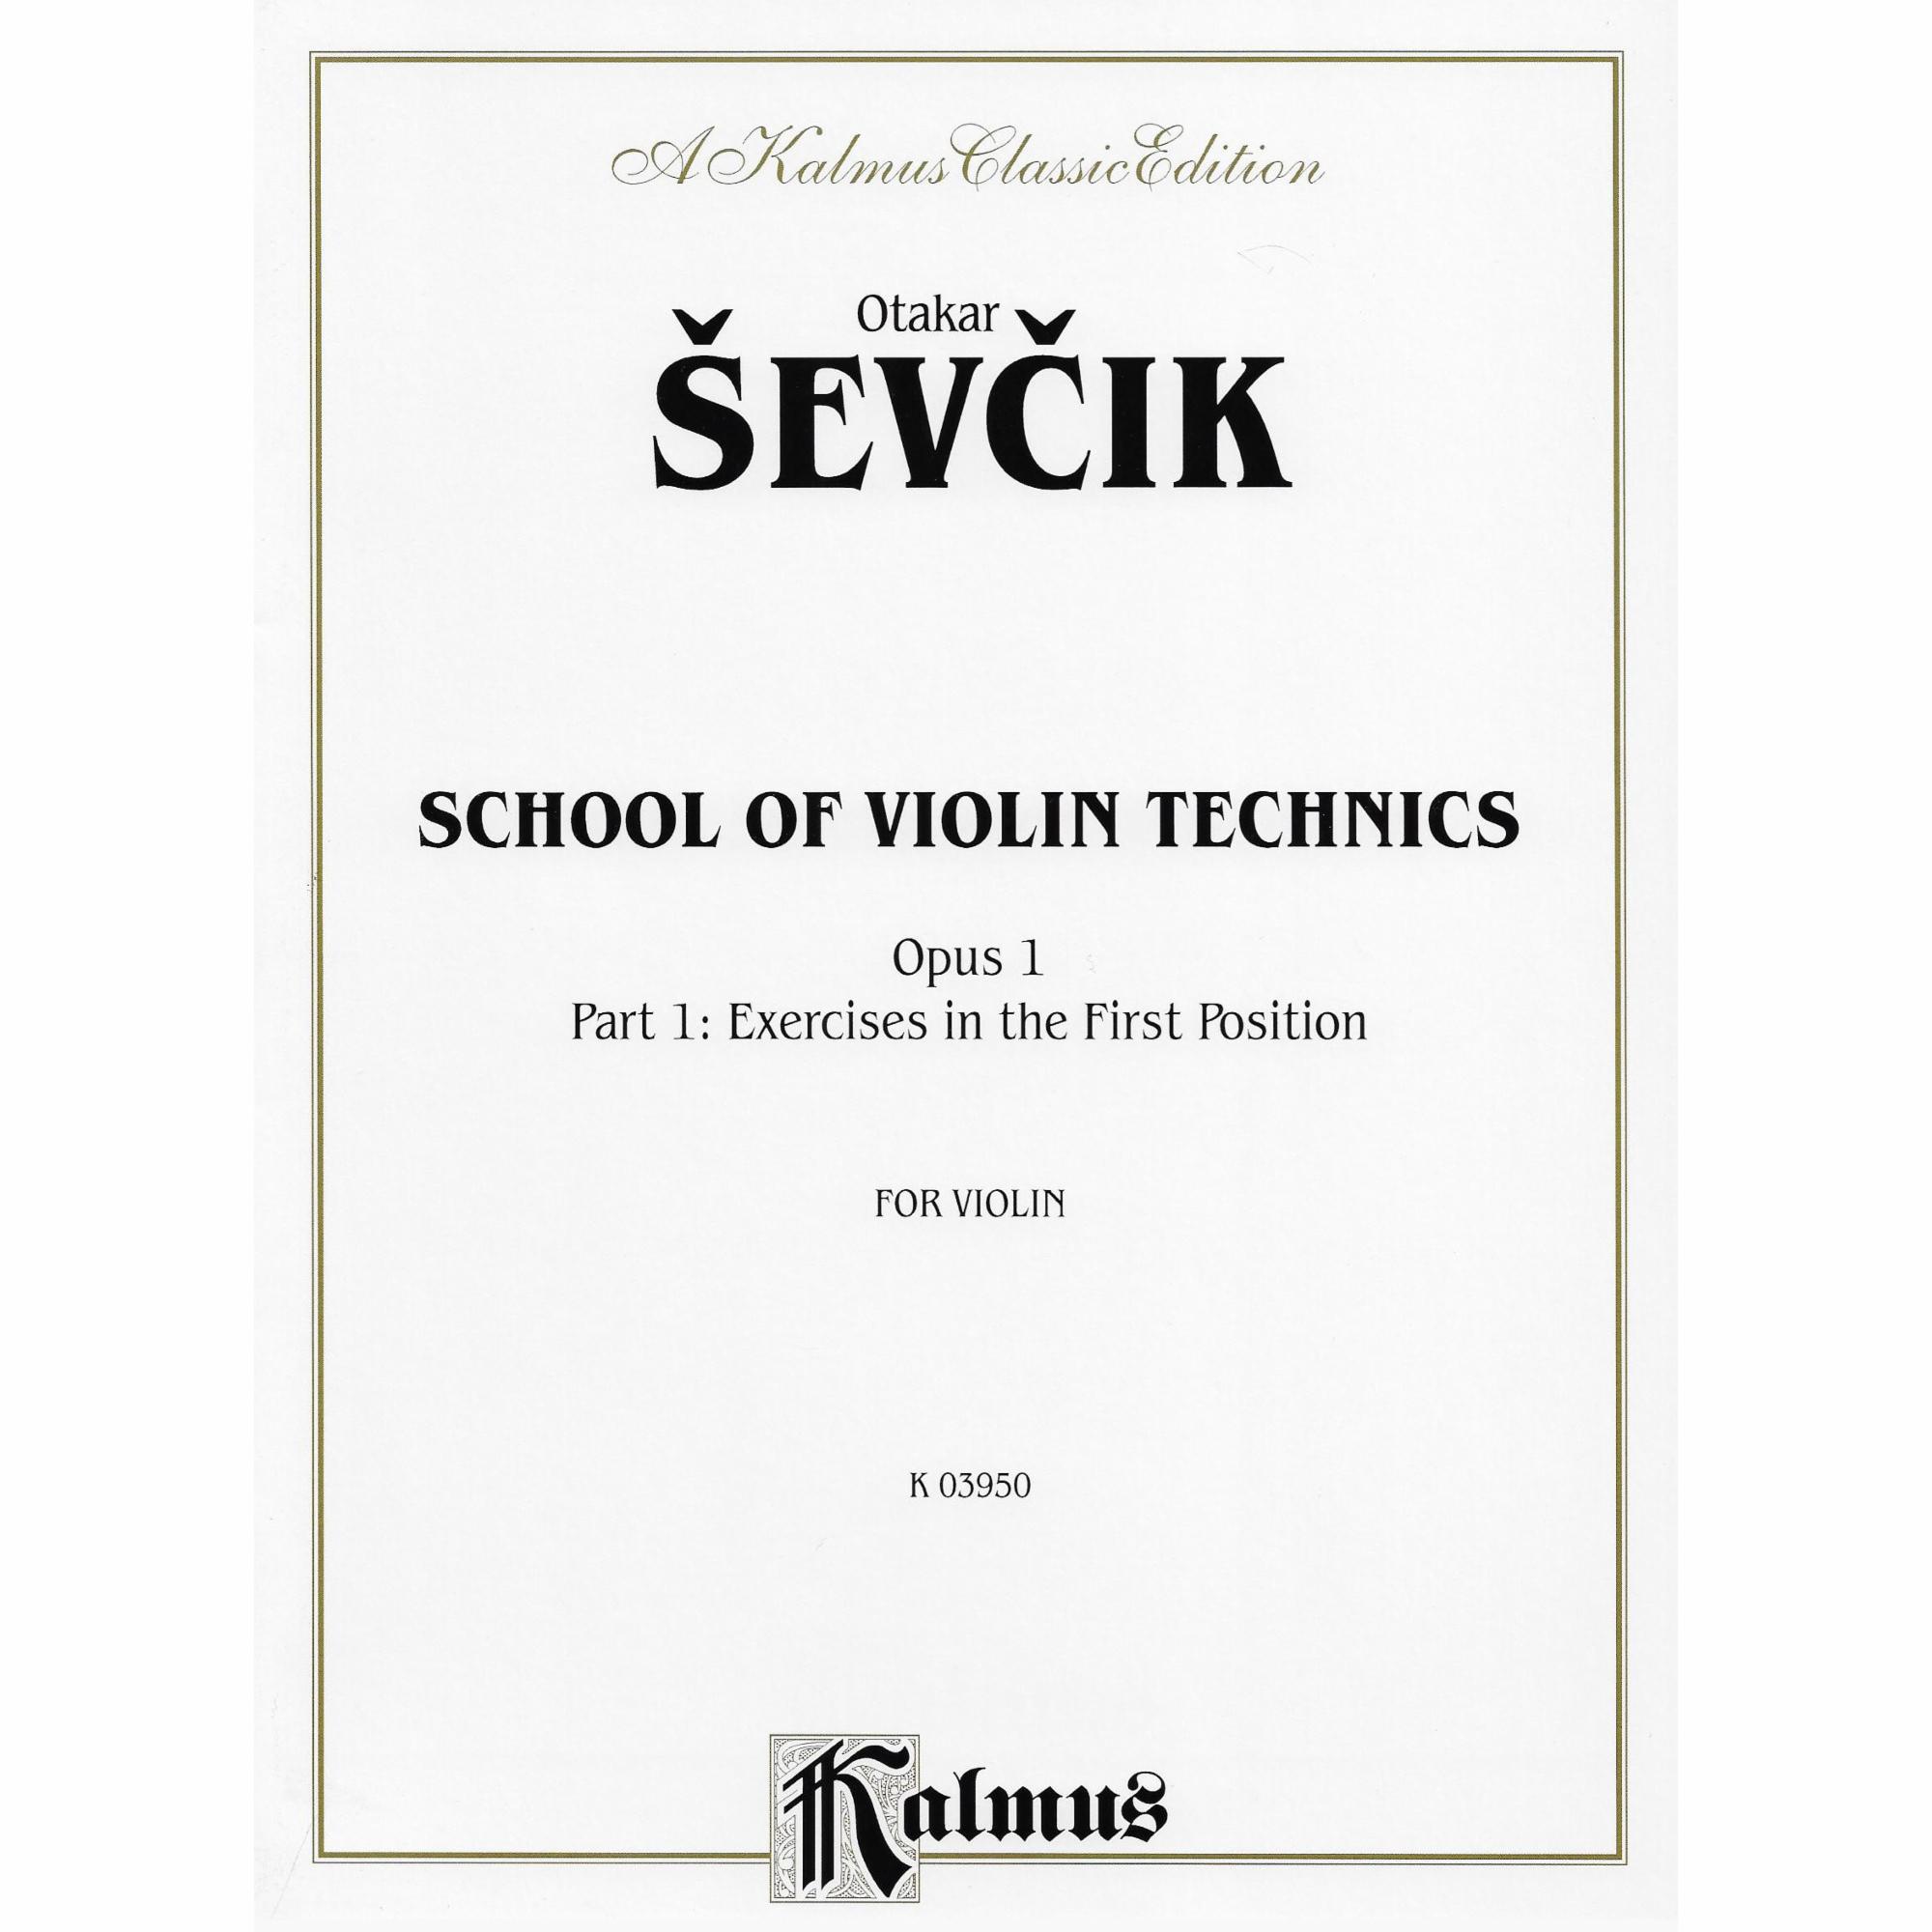 Sevcik -- School of Violin Technics, Op. 1, Part 1 for Violin